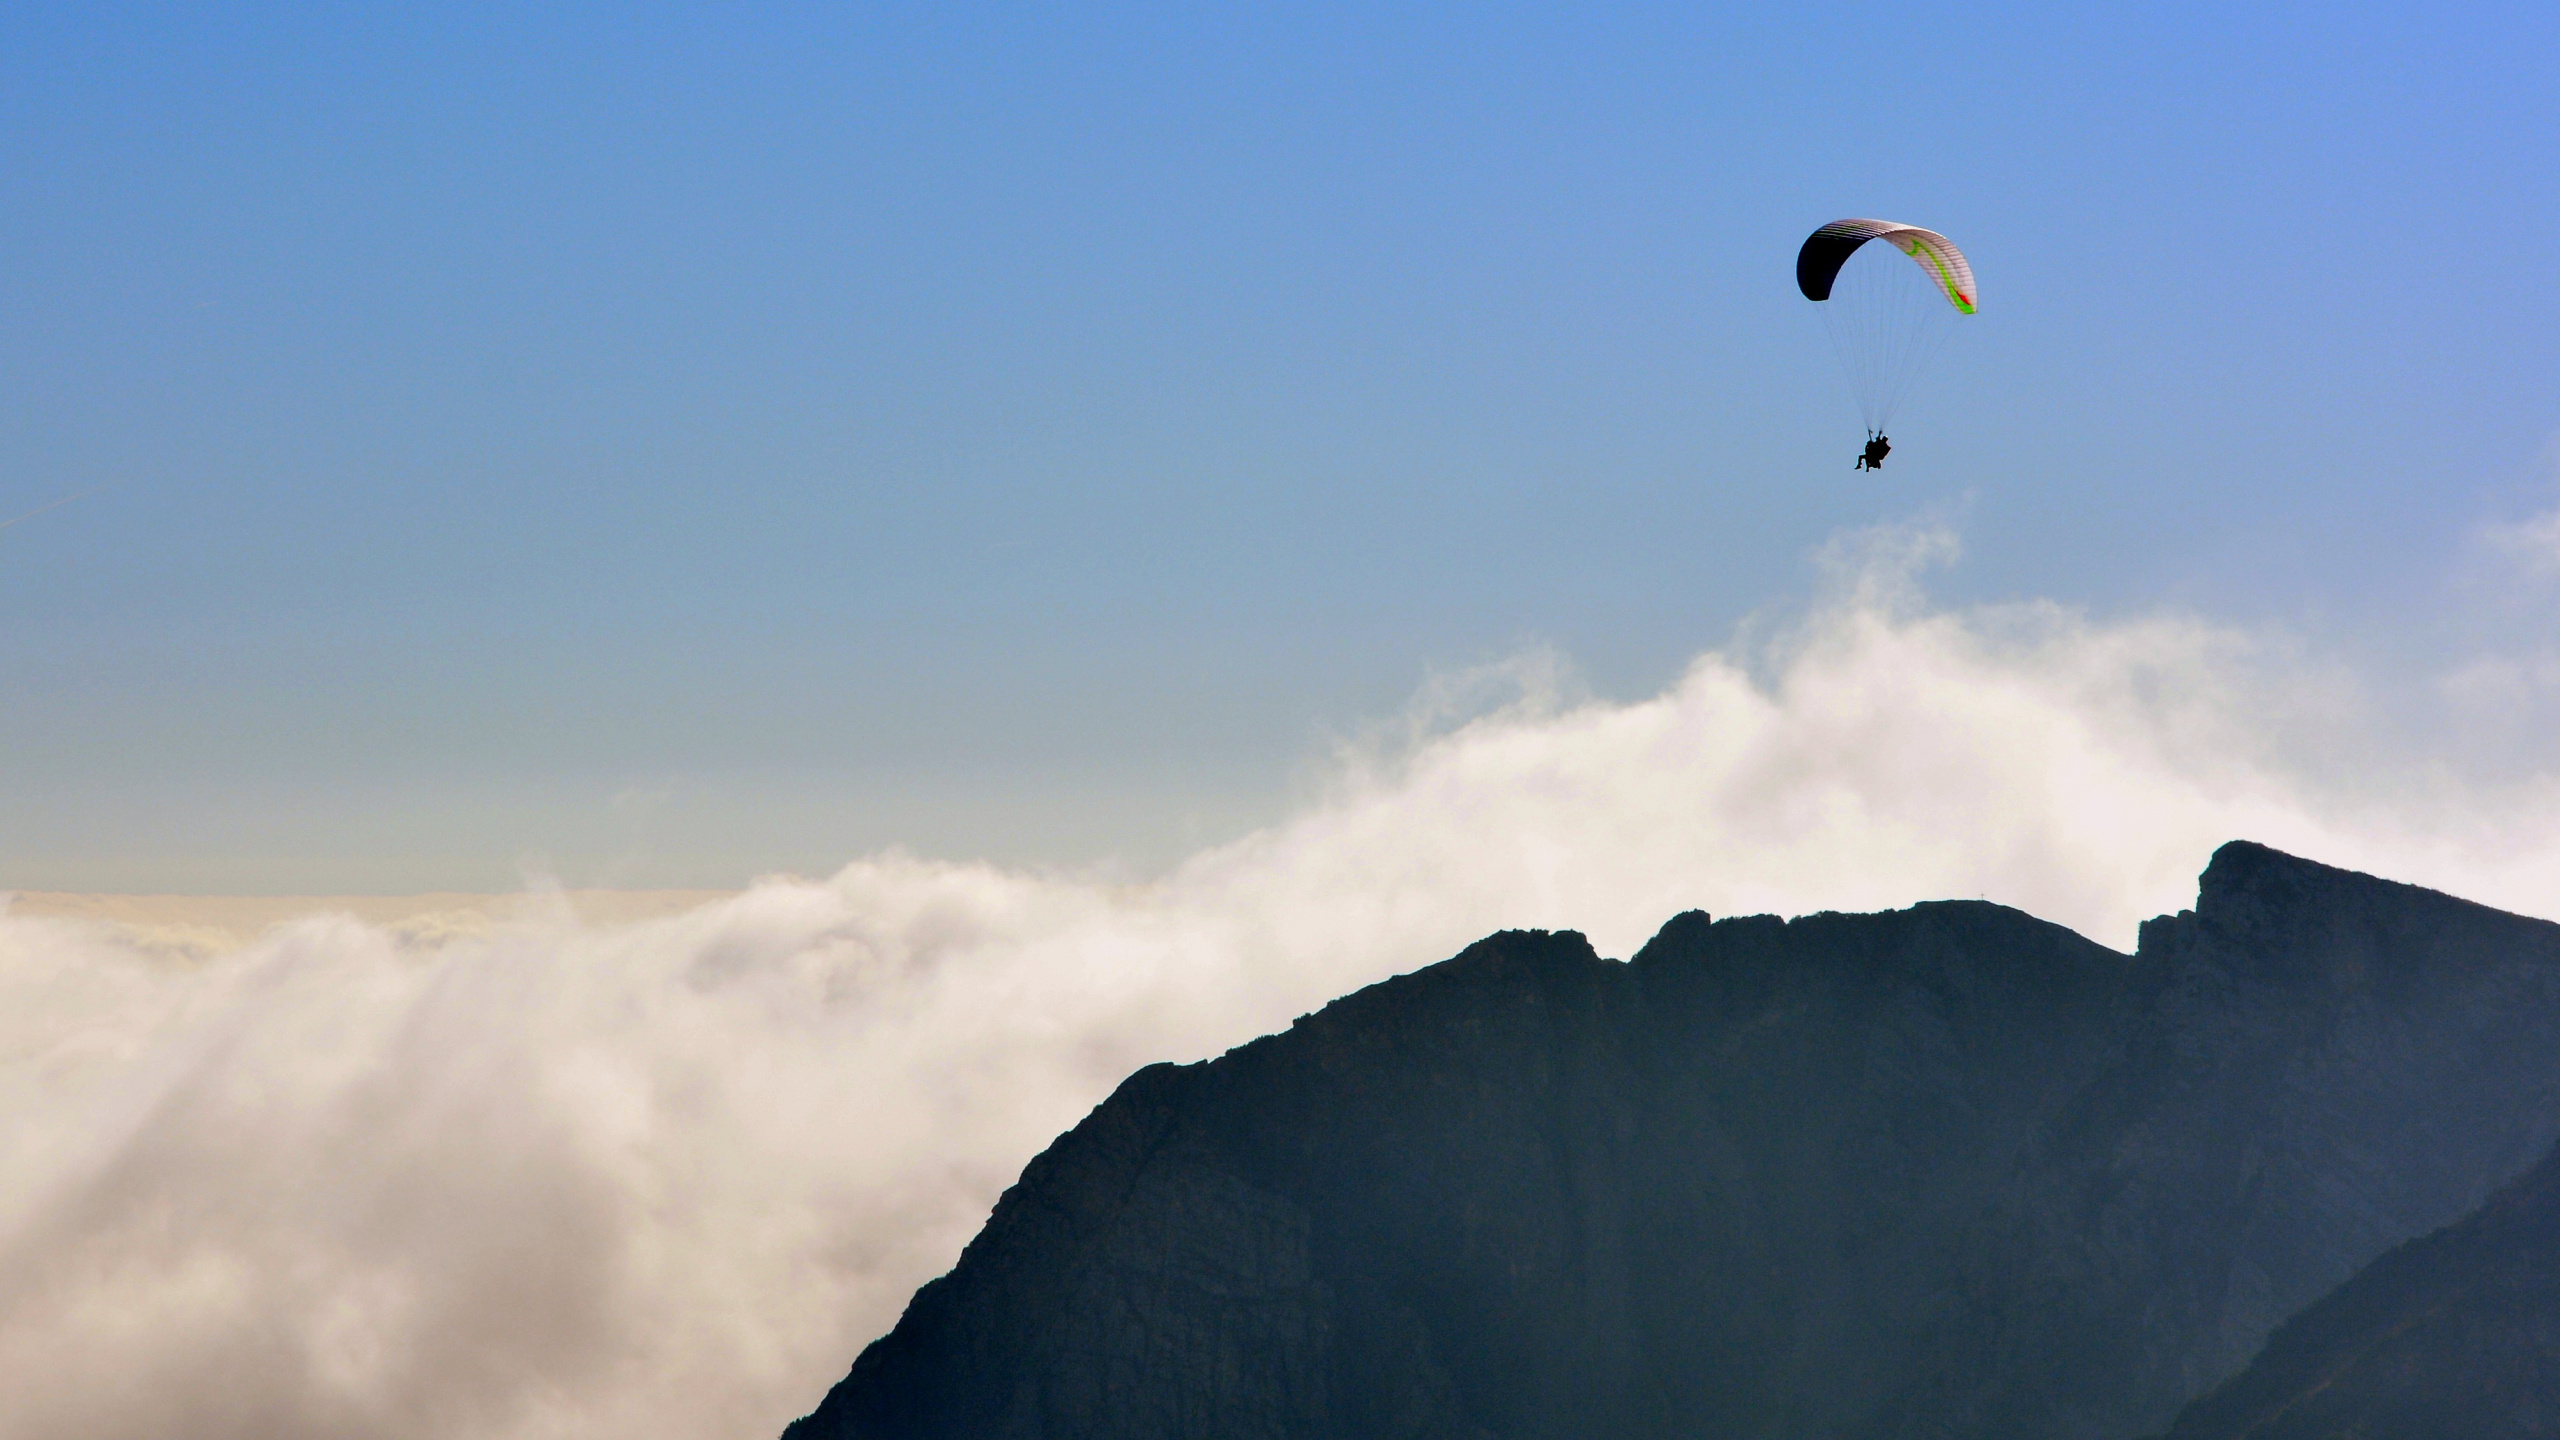 Persona Montando en Paracaídas Sobre la Montaña. Wallpaper in 2560x1440 Resolution